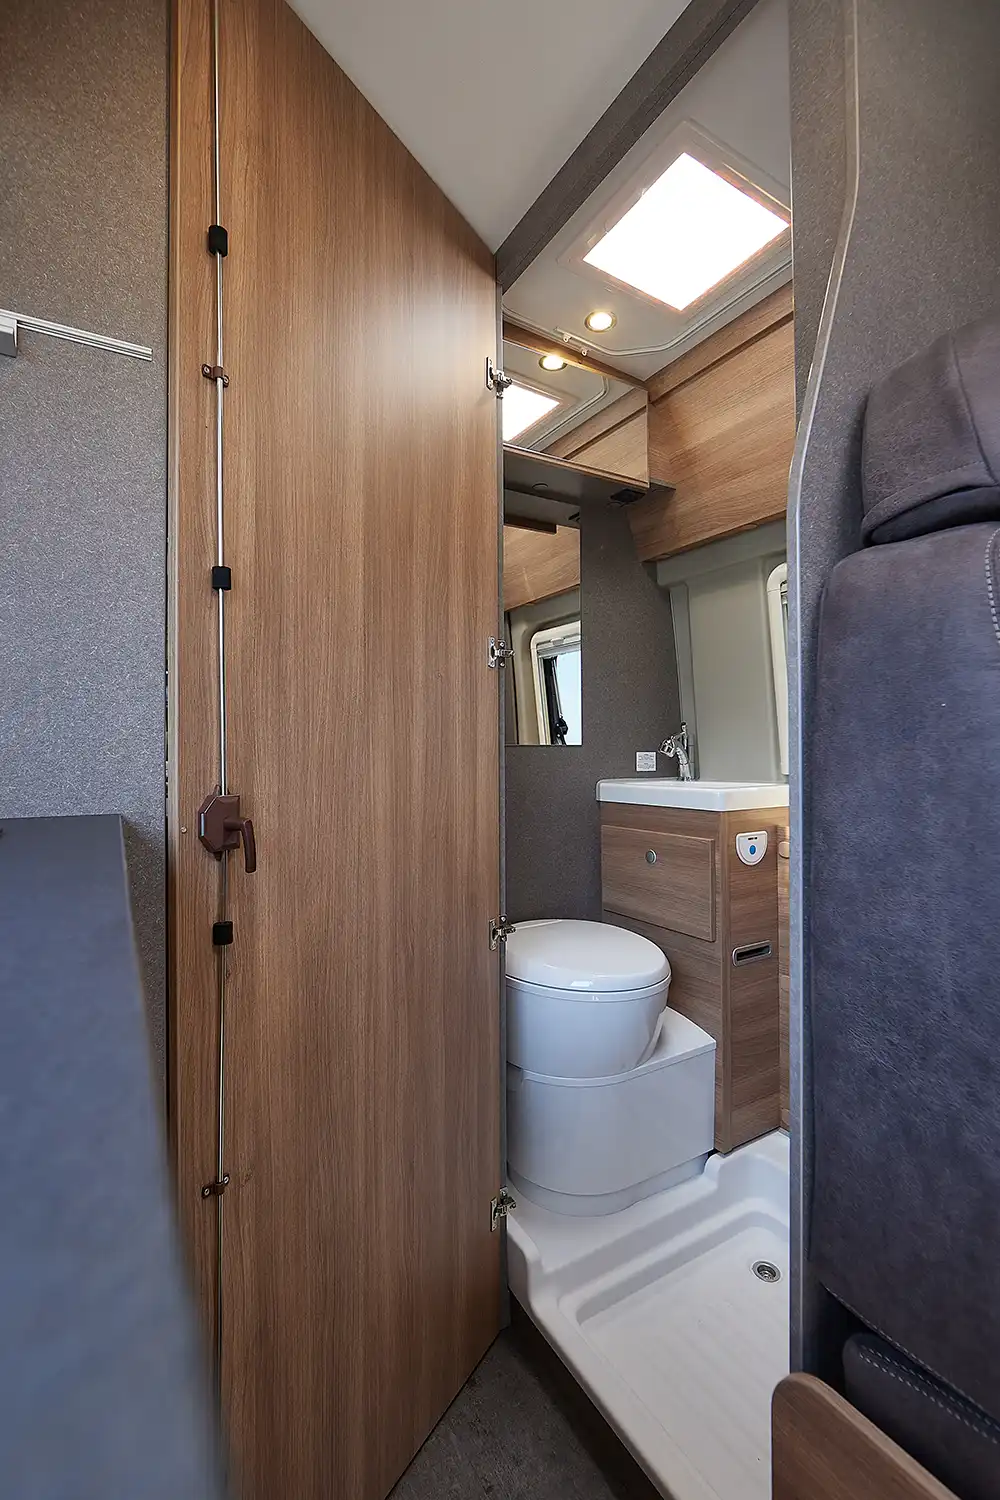 Als Festbad definiert Dethleffs eine Nasszelle mit fester Holztür, einem kleinen Waschbecken und Toilette; mit einem umlaufenden Vorhang kann der Innenraum auch zum Duschen genutzt werden.